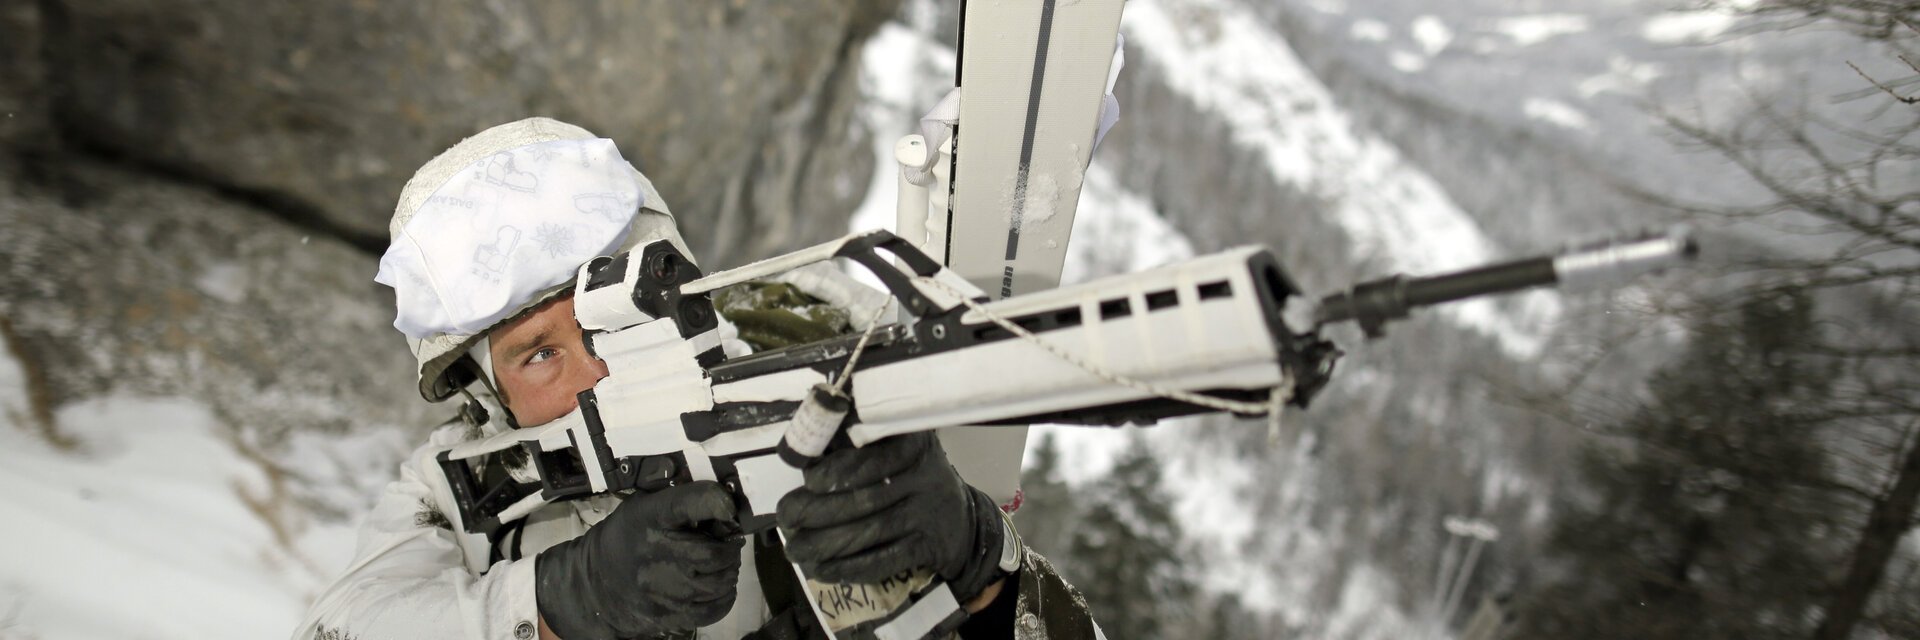 GebirgsjÃ¤ger im Schneetarnanzug sichert mit einem Gewehr das GelÃ¤nde in der Bergen